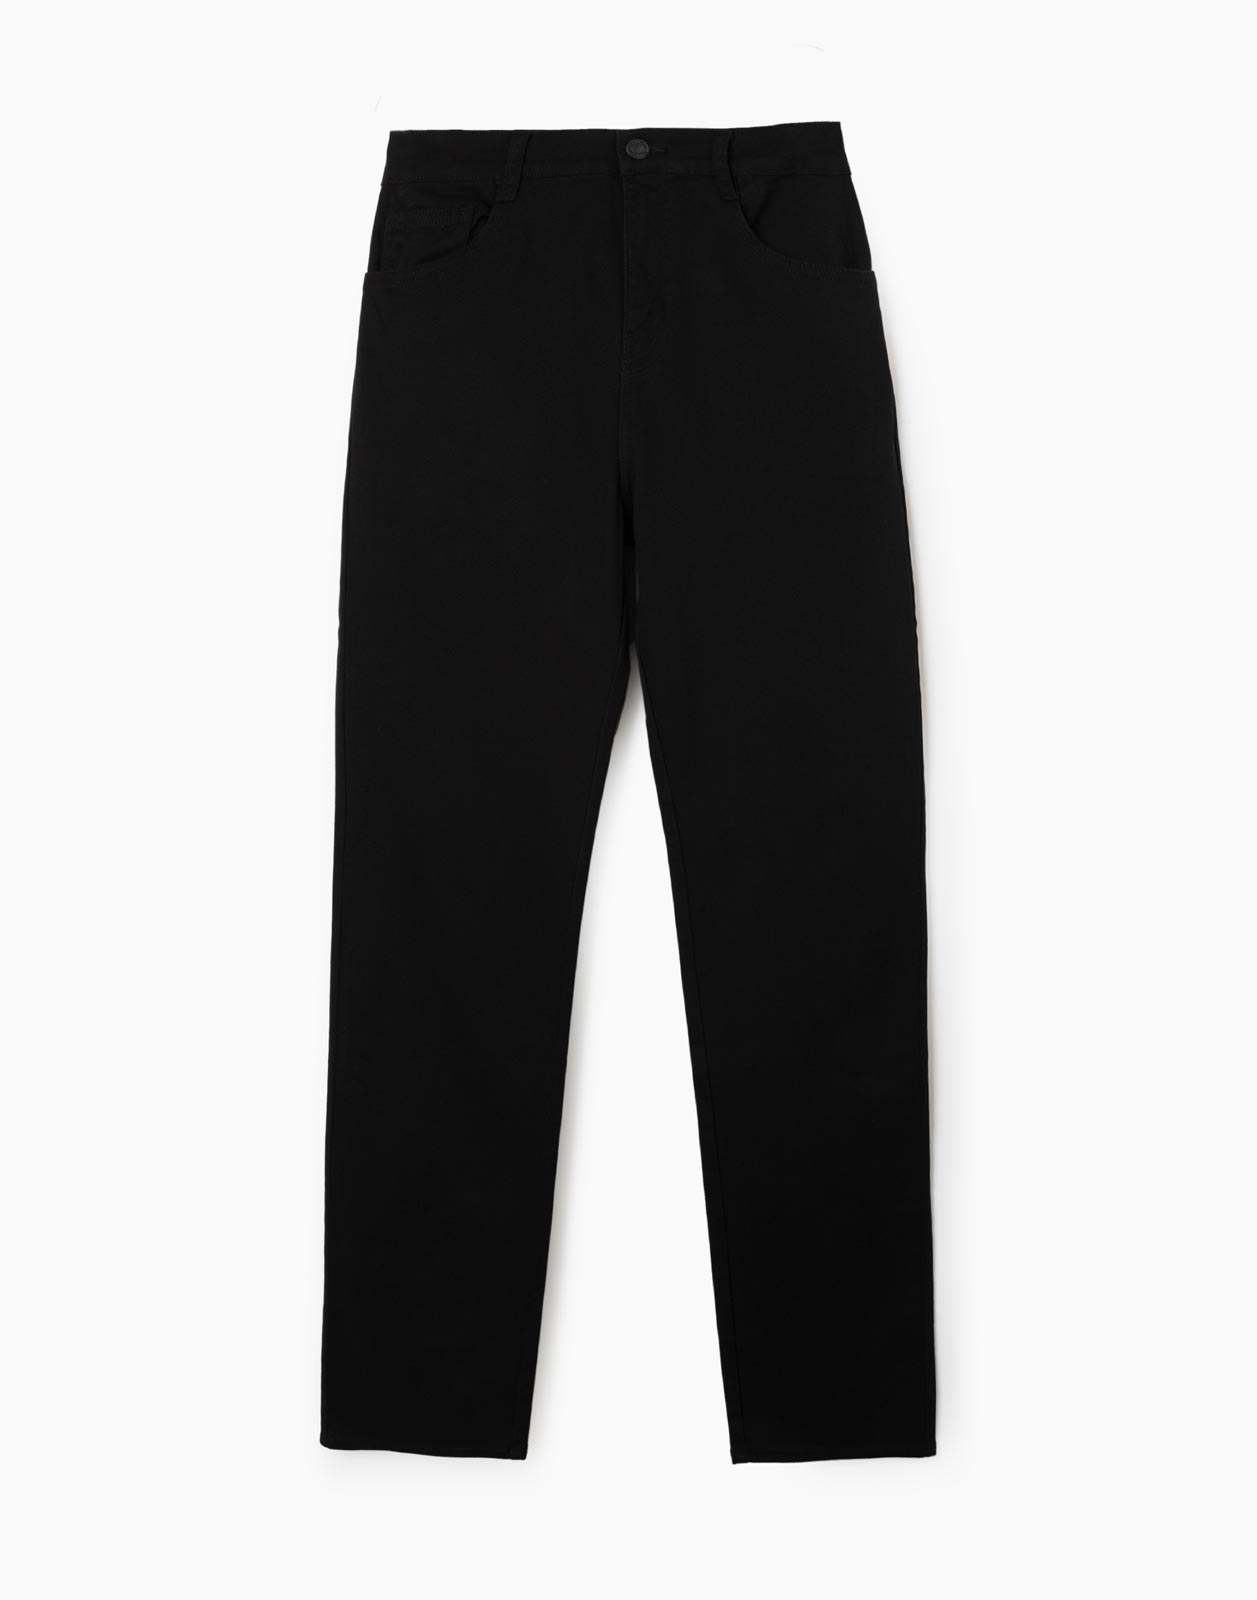 Чёрные зауженные джинсы Slim для мальчика BJN013780 14+/170